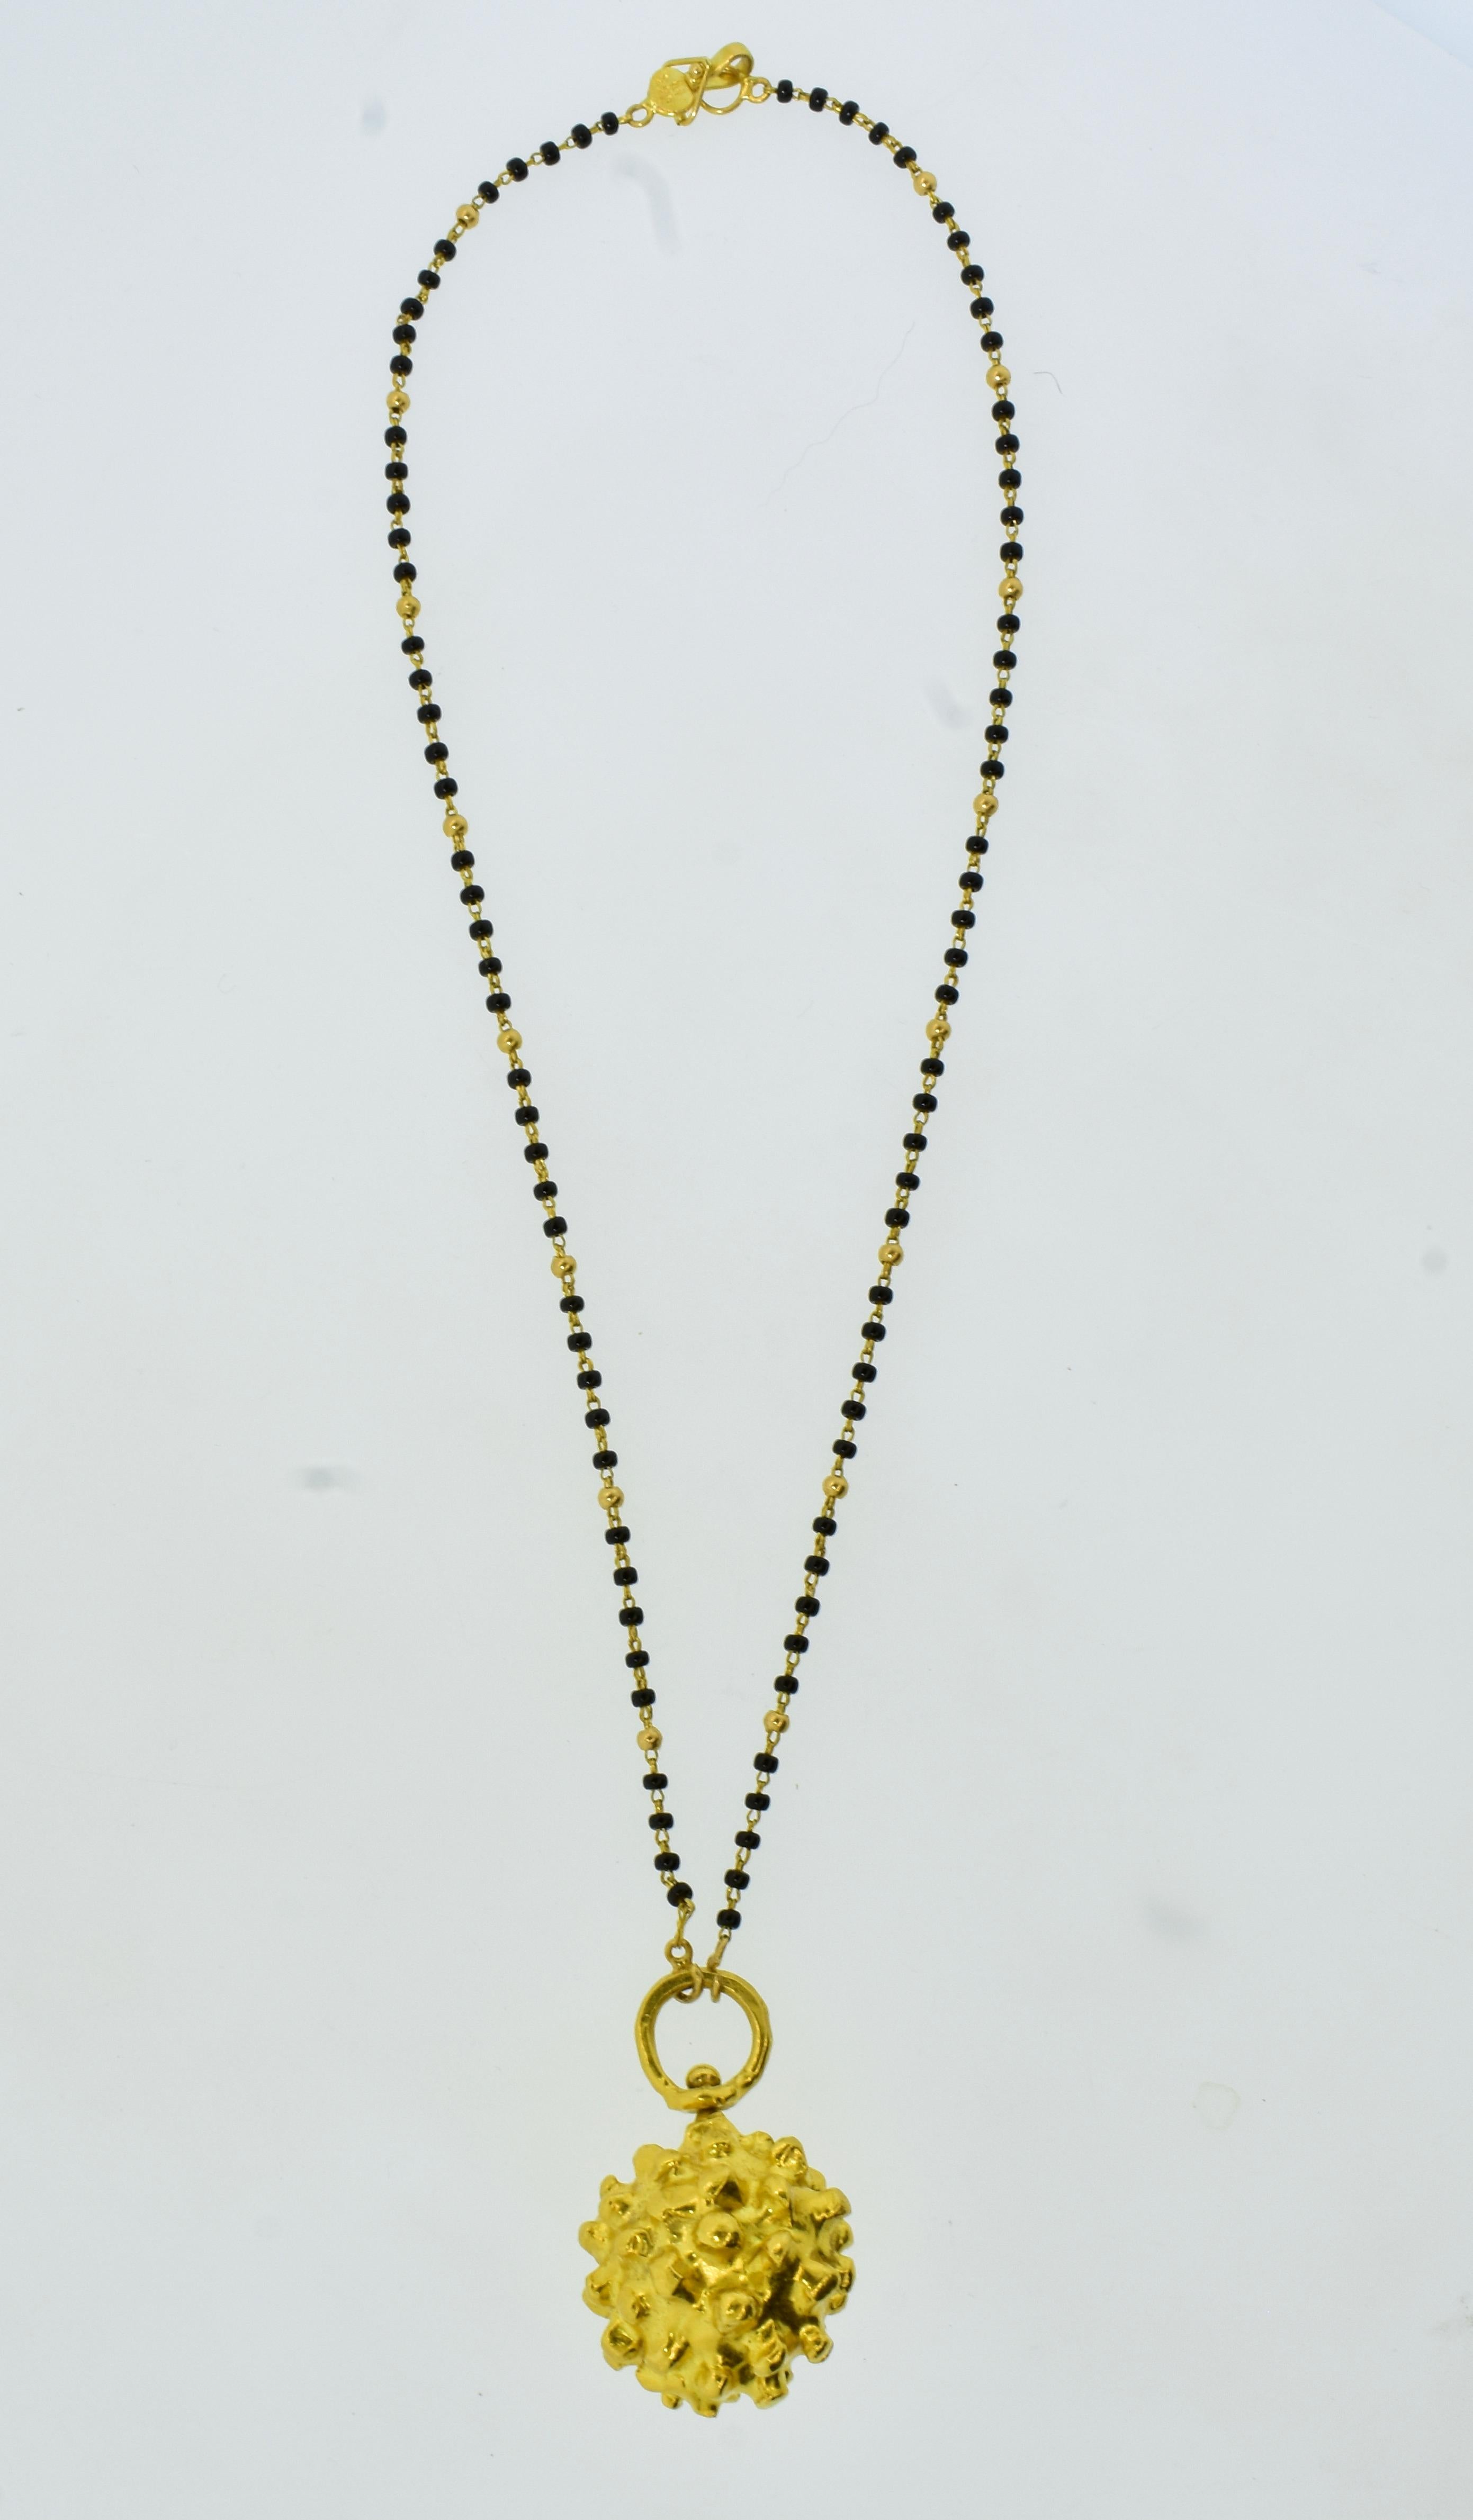 Der etruskische Kugelanhänger von Jean Mahie ist sehr leicht zu tragen und unverwechselbar.  Hier abgebildet an einer modernen Goldkette mit kleinen Onyxkugeln, die eine Länge von 16,5 Zoll hat.  Dieses Stück ist ein Klassiker aus dem weltberühmten